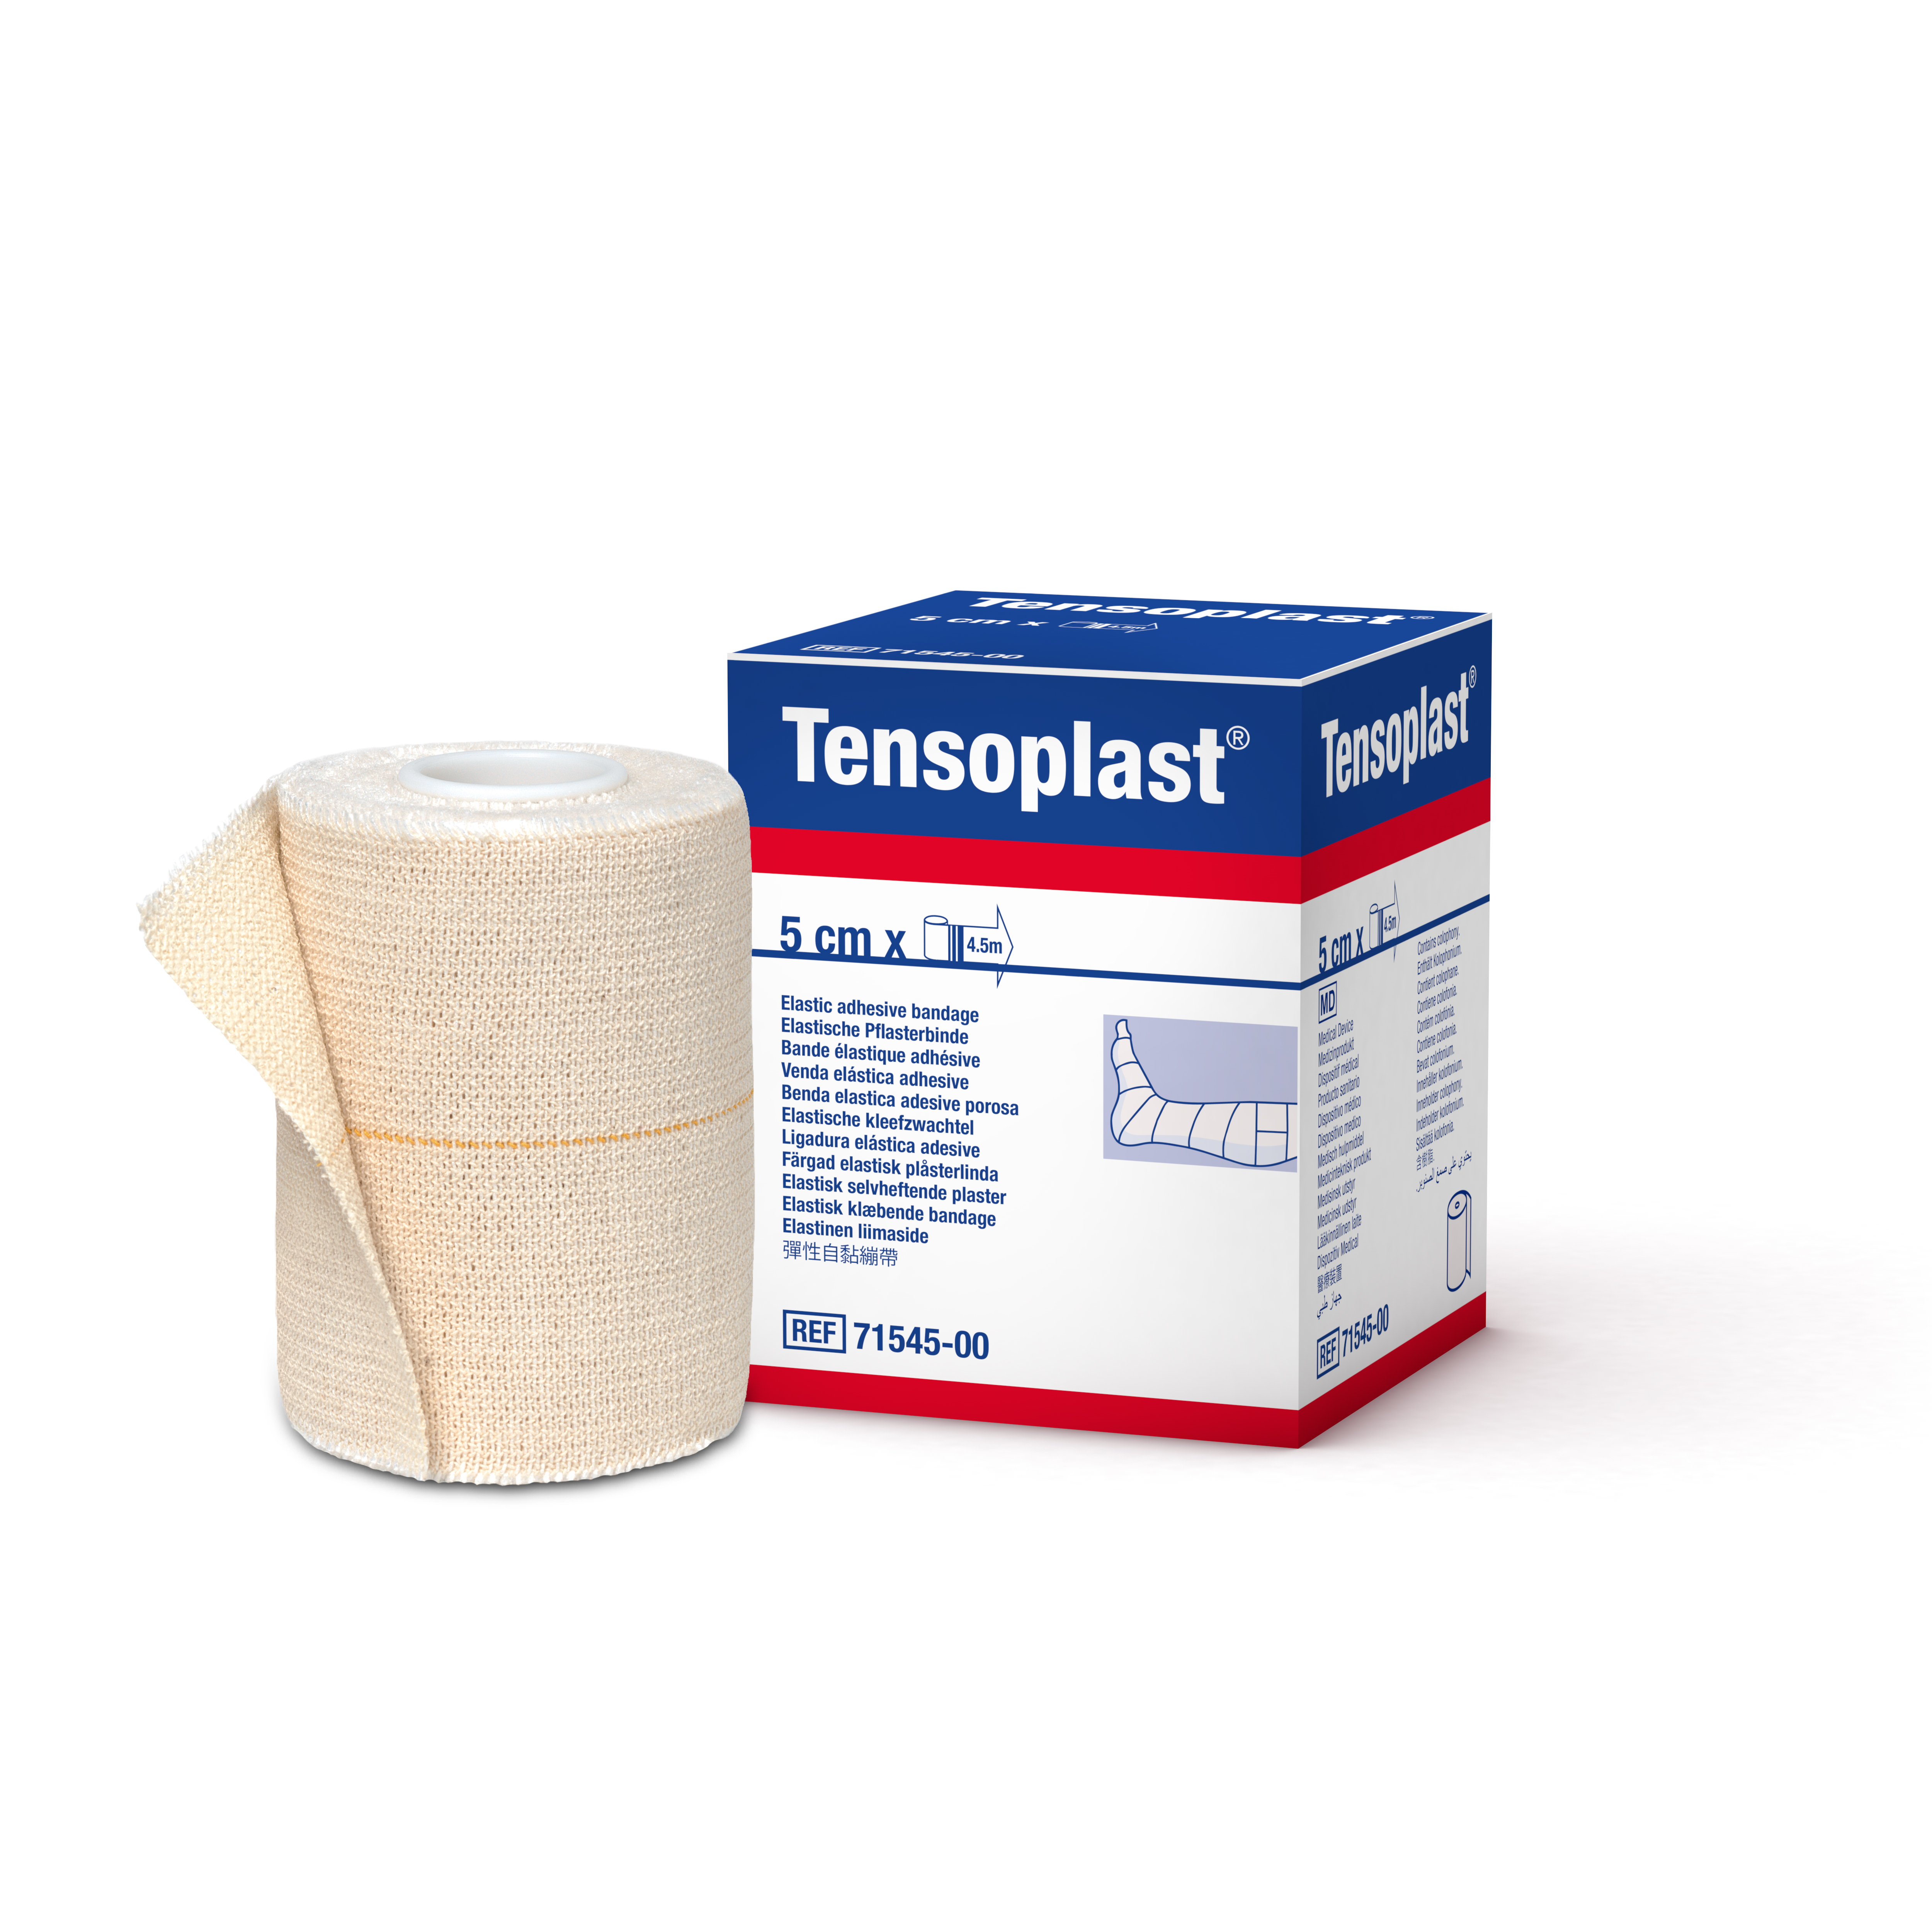 Tensoplast® elastische kleefzwachtel - 5 cm x 4,5 m - 1 st